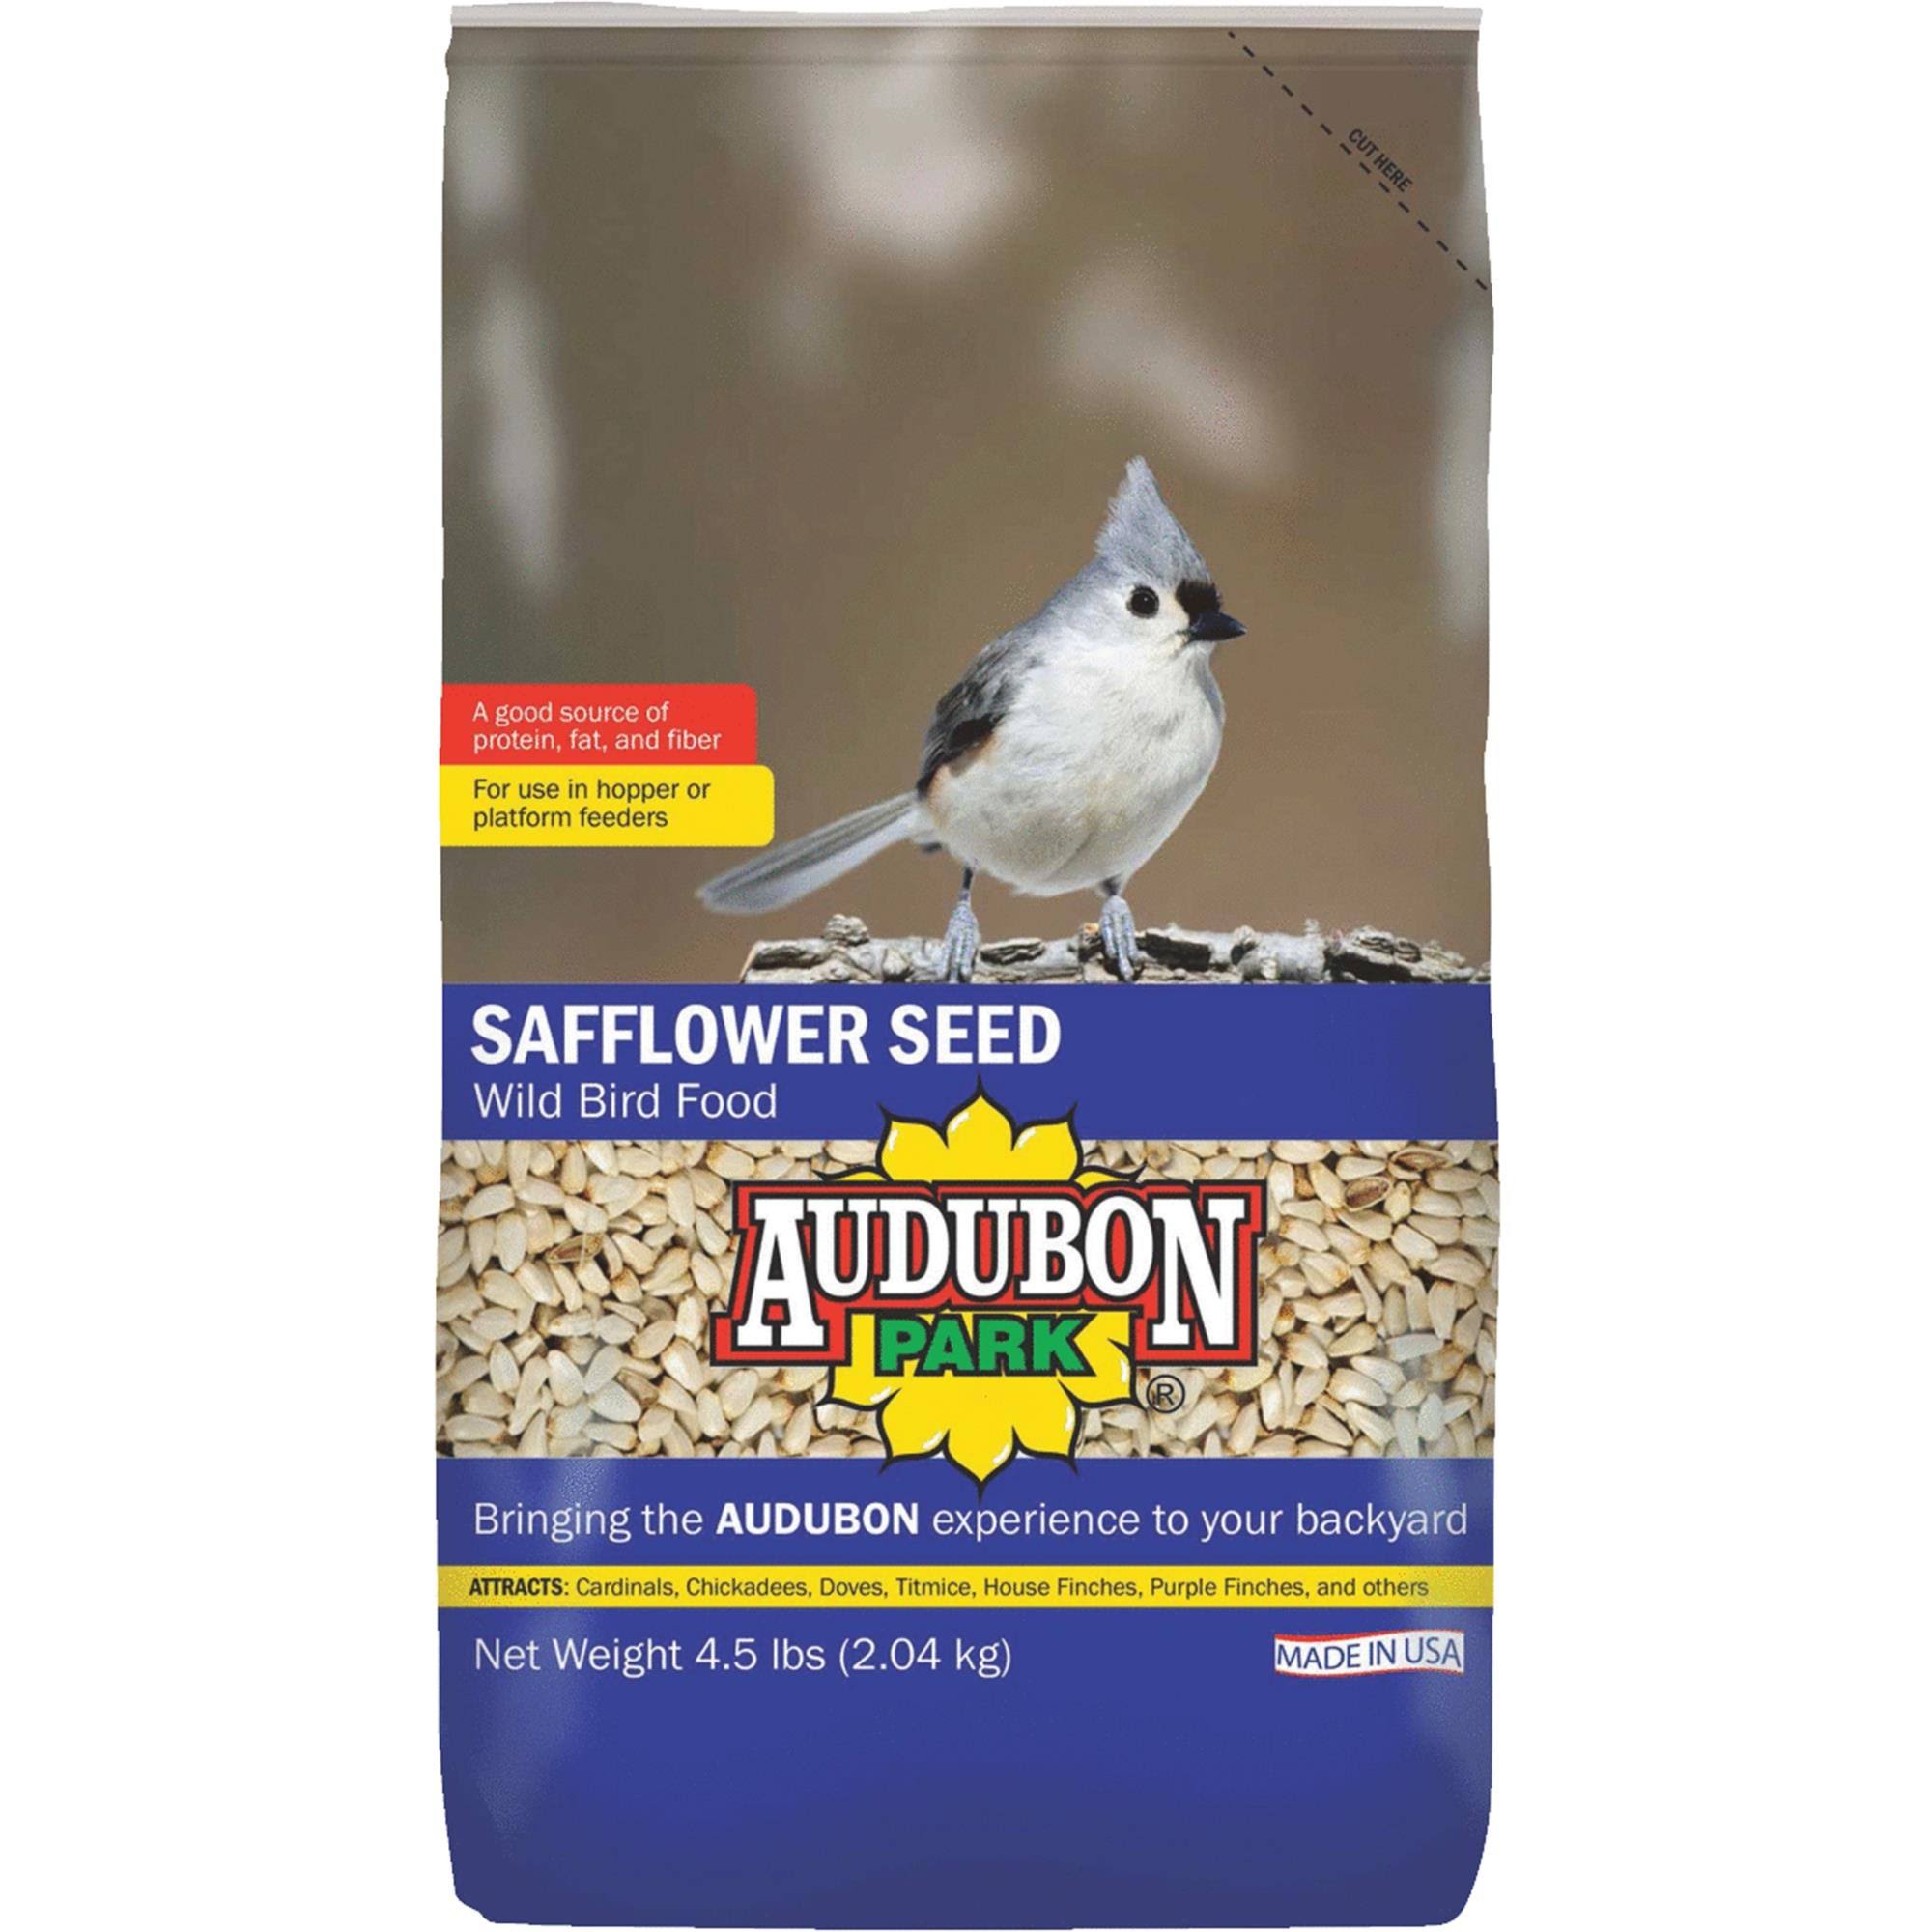 Audubon Park Wild Bird Food, Safflower Seed - 4.5 lbs (2.04 kg)